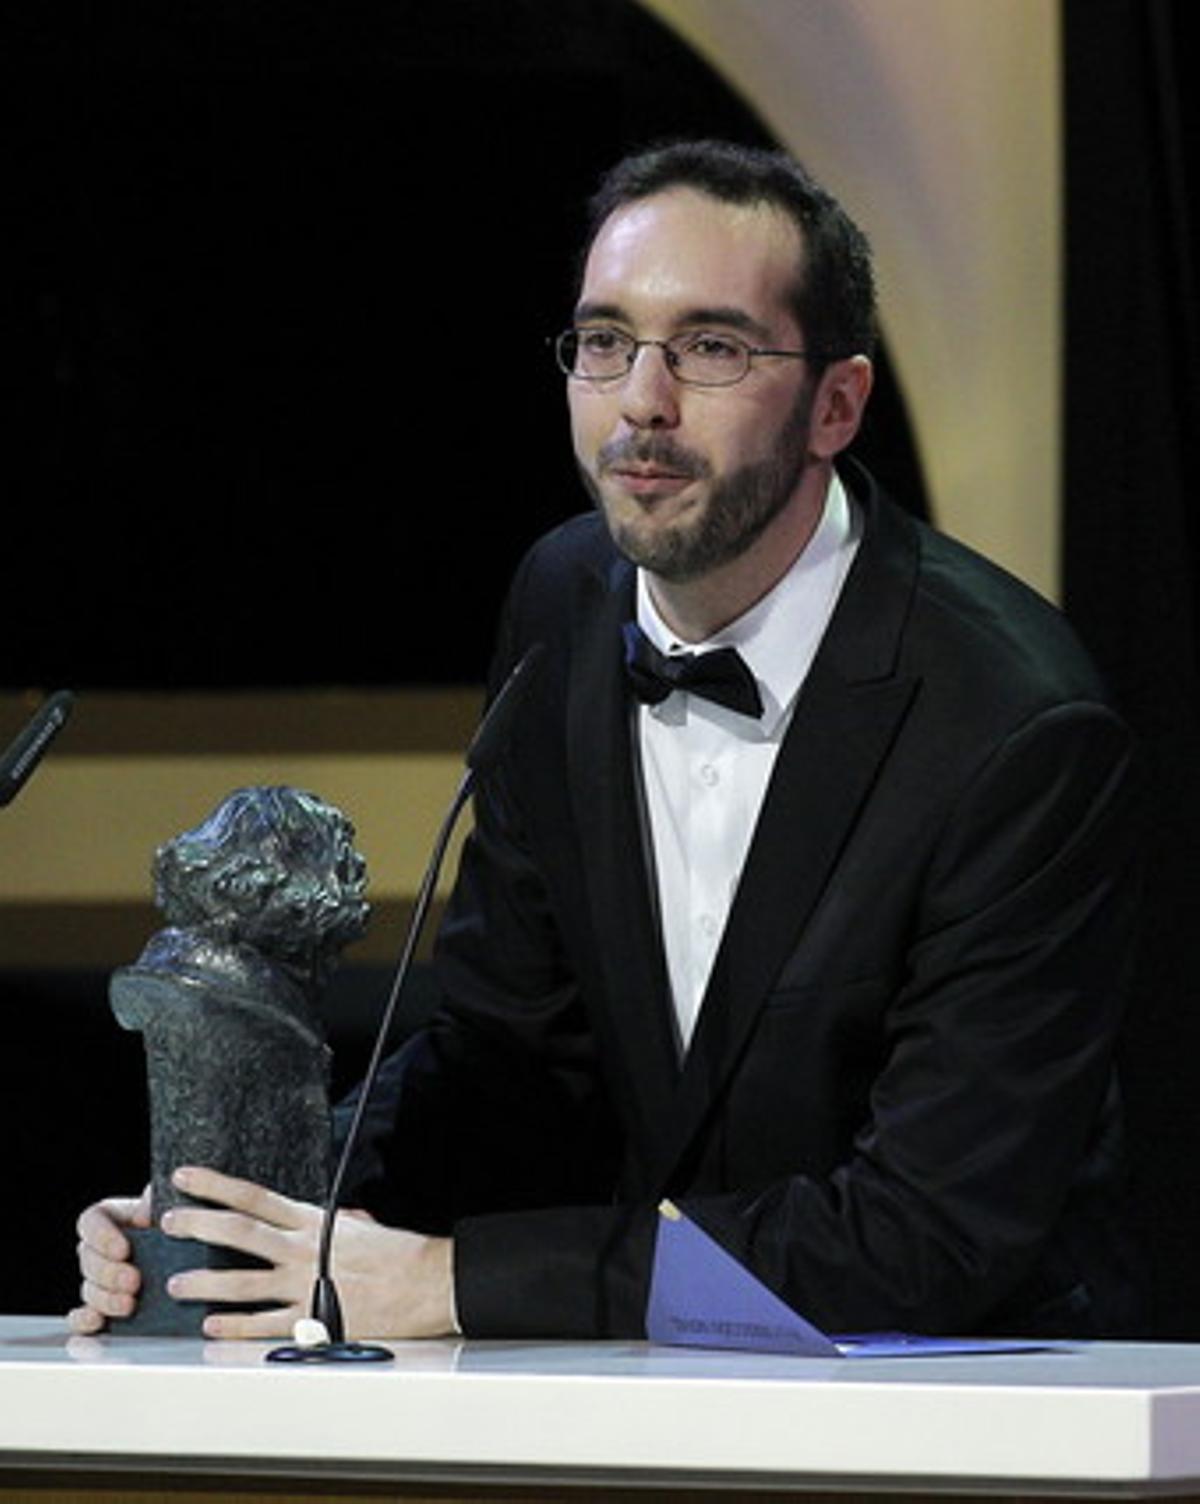 El director Enrique Gato recibe el Goya a la mejor dirección novel, por su trabajo en ’Las aventuras de Tadeo Jones’.